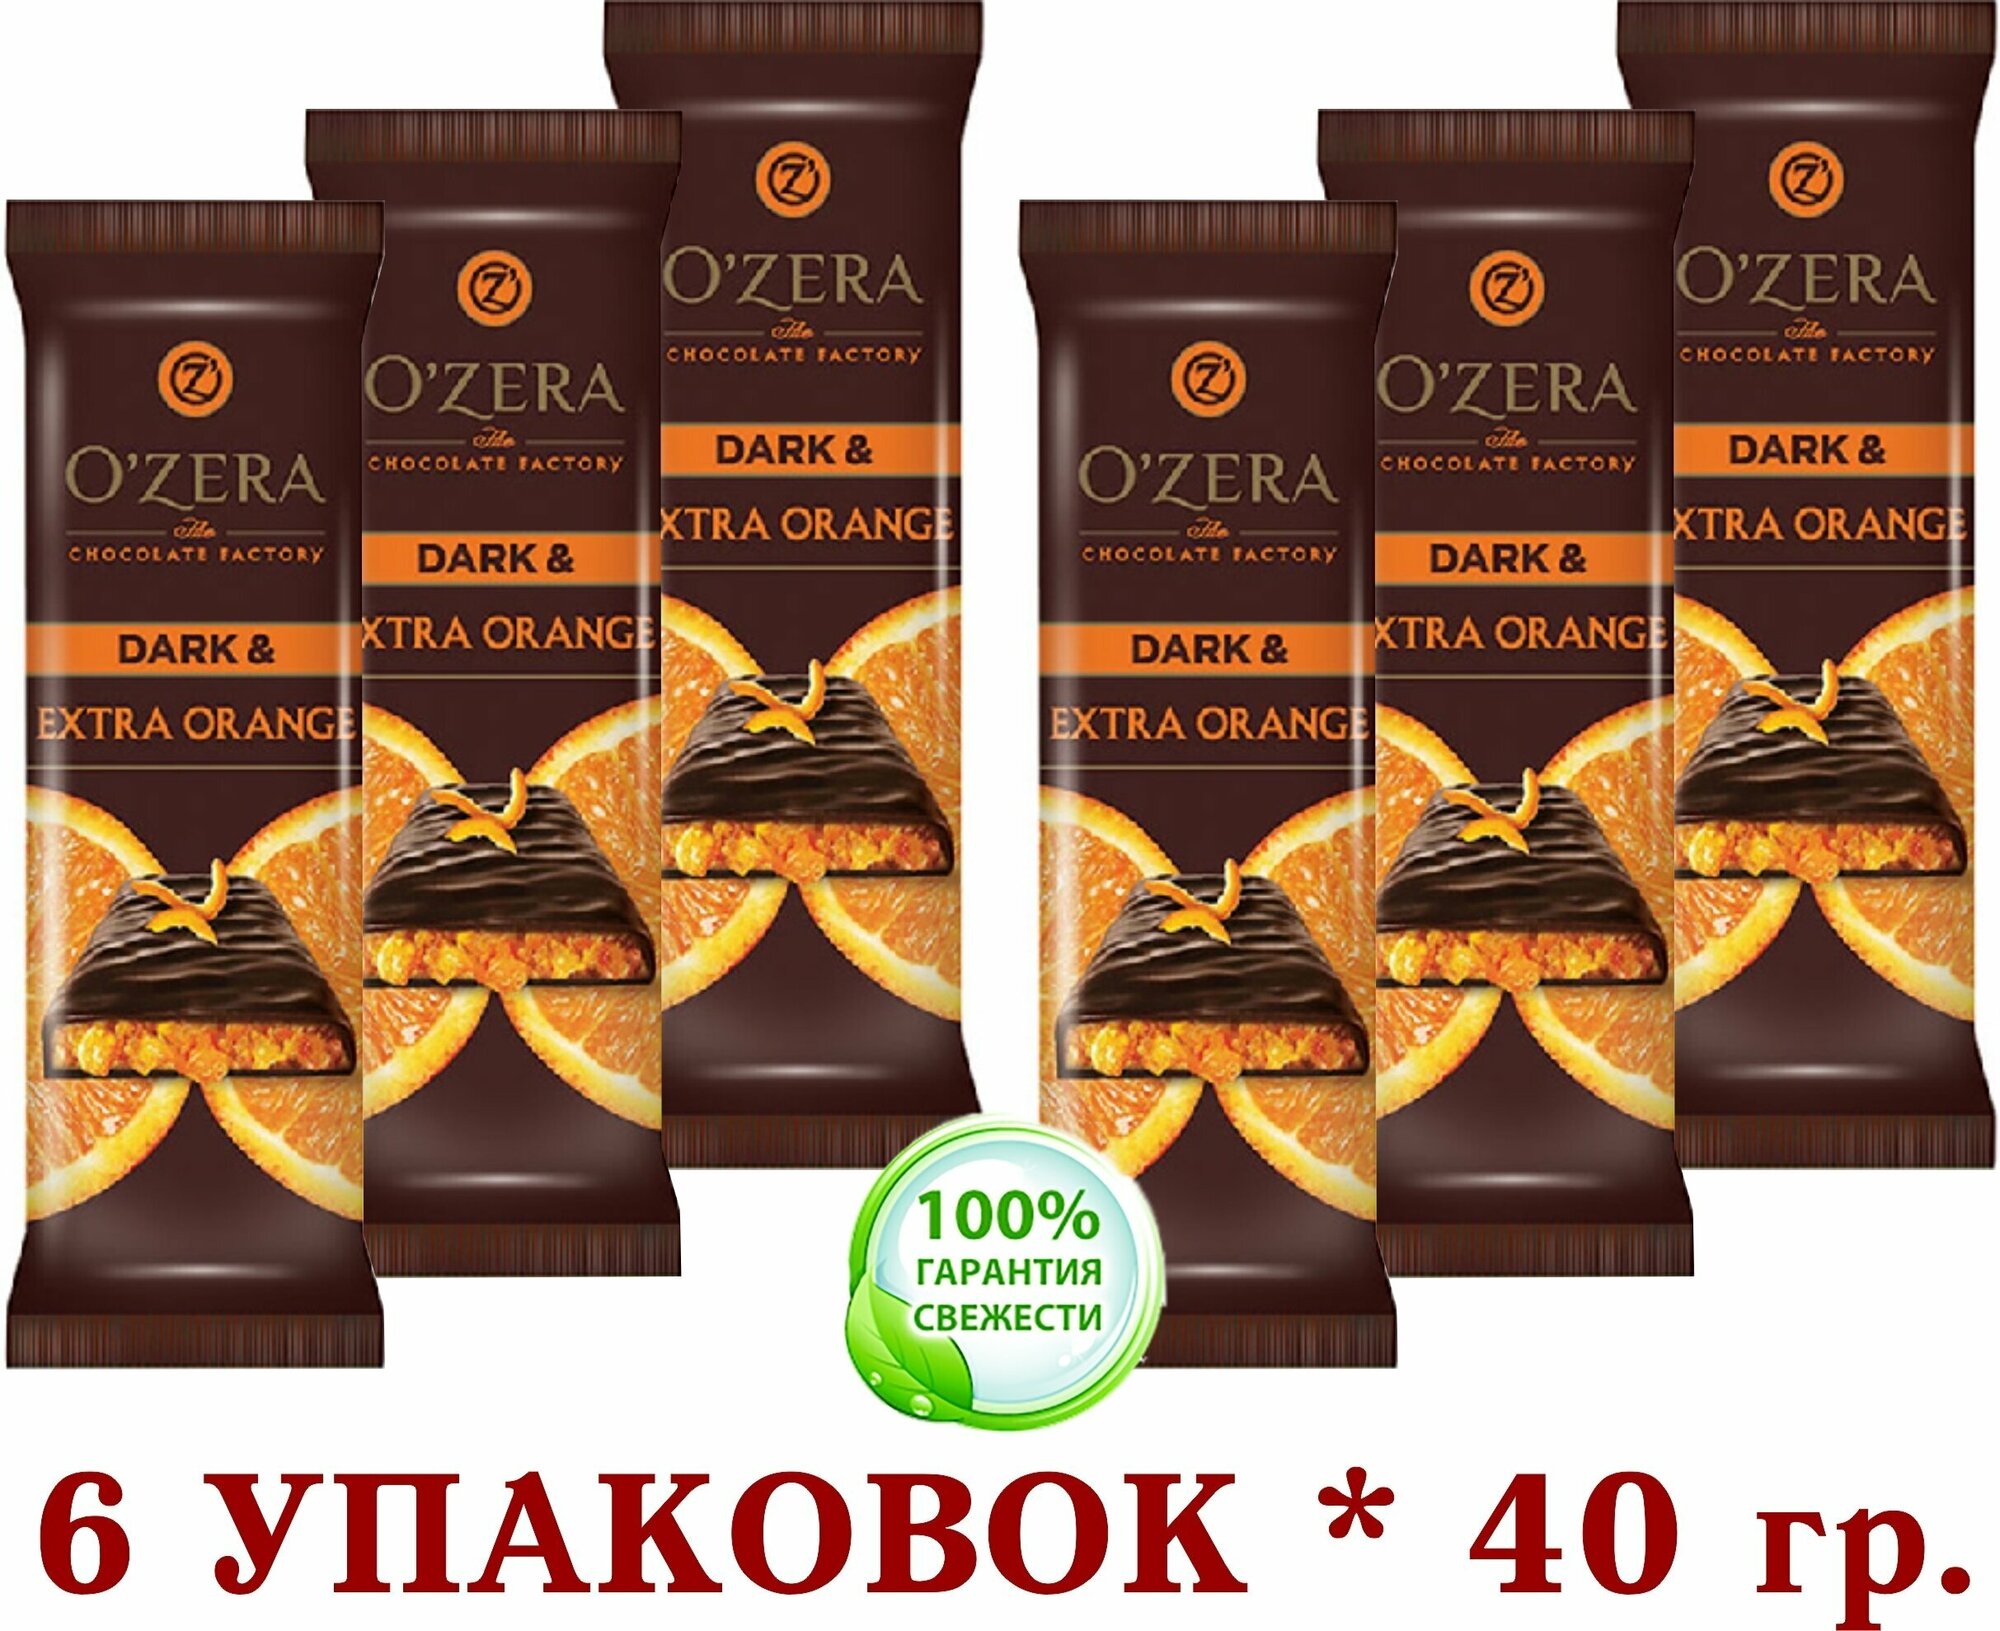 Шоколад горький С апельсиновой начинкой "озёрский" Dark & Red berries "OZera" 6 уп. * 40 г .